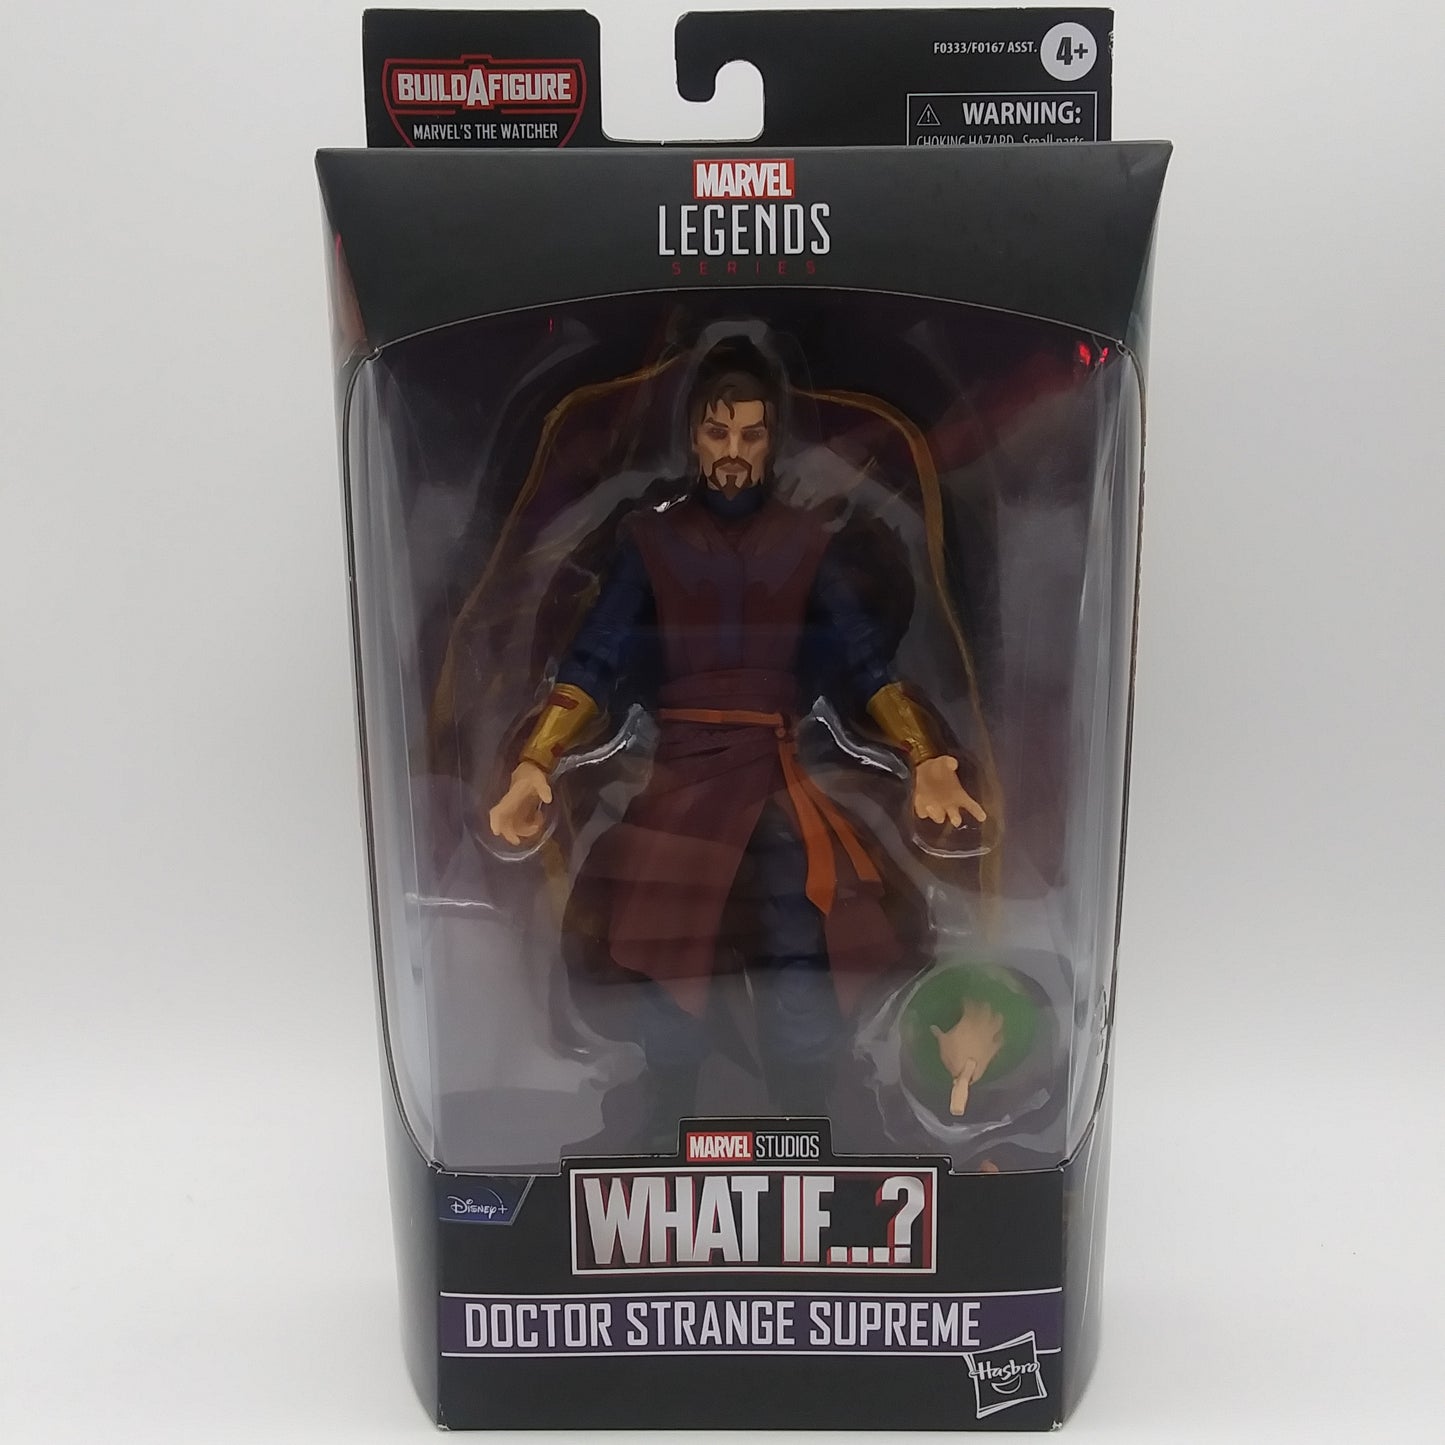 Marvel Legends What if? Doctor Strange Supreme